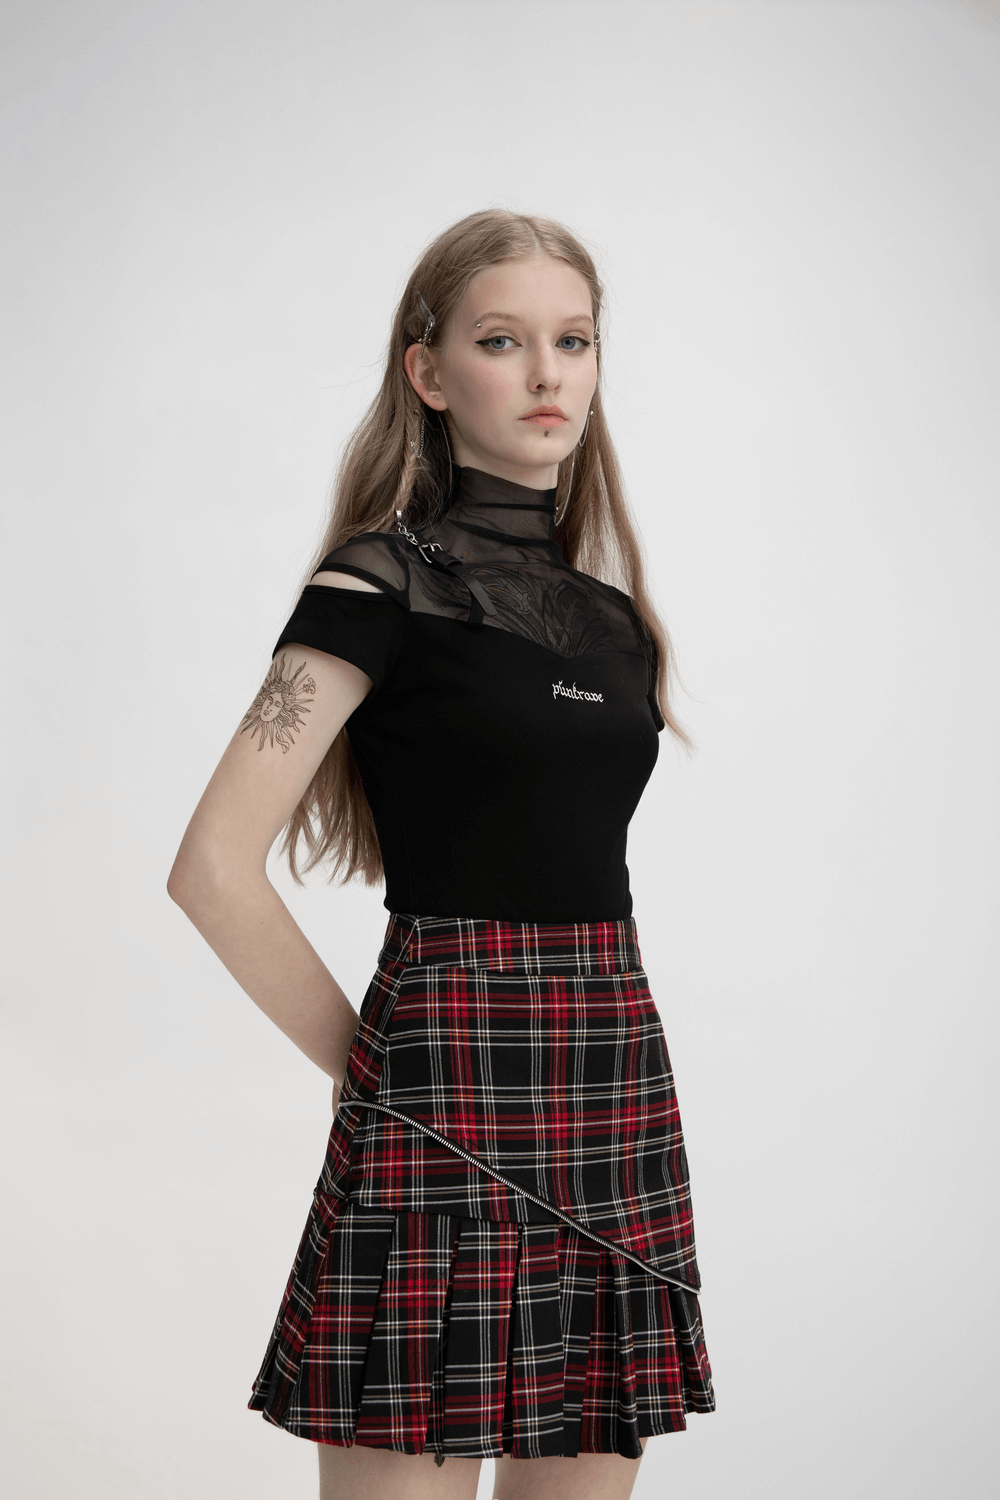 Chic Tartan A-Line Skirt with Unique Diagonal Hem